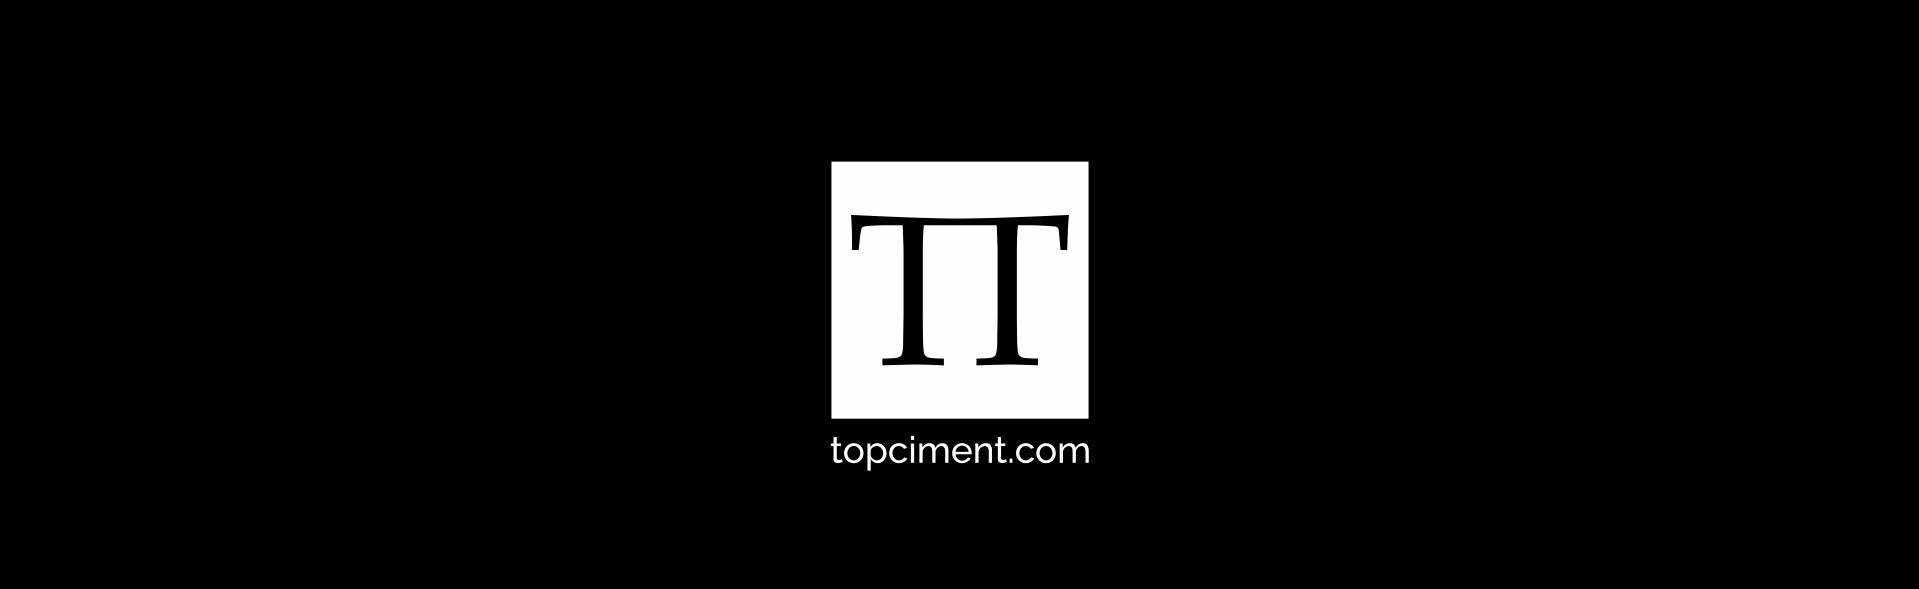 Topciment-logo på svart bakgrunn